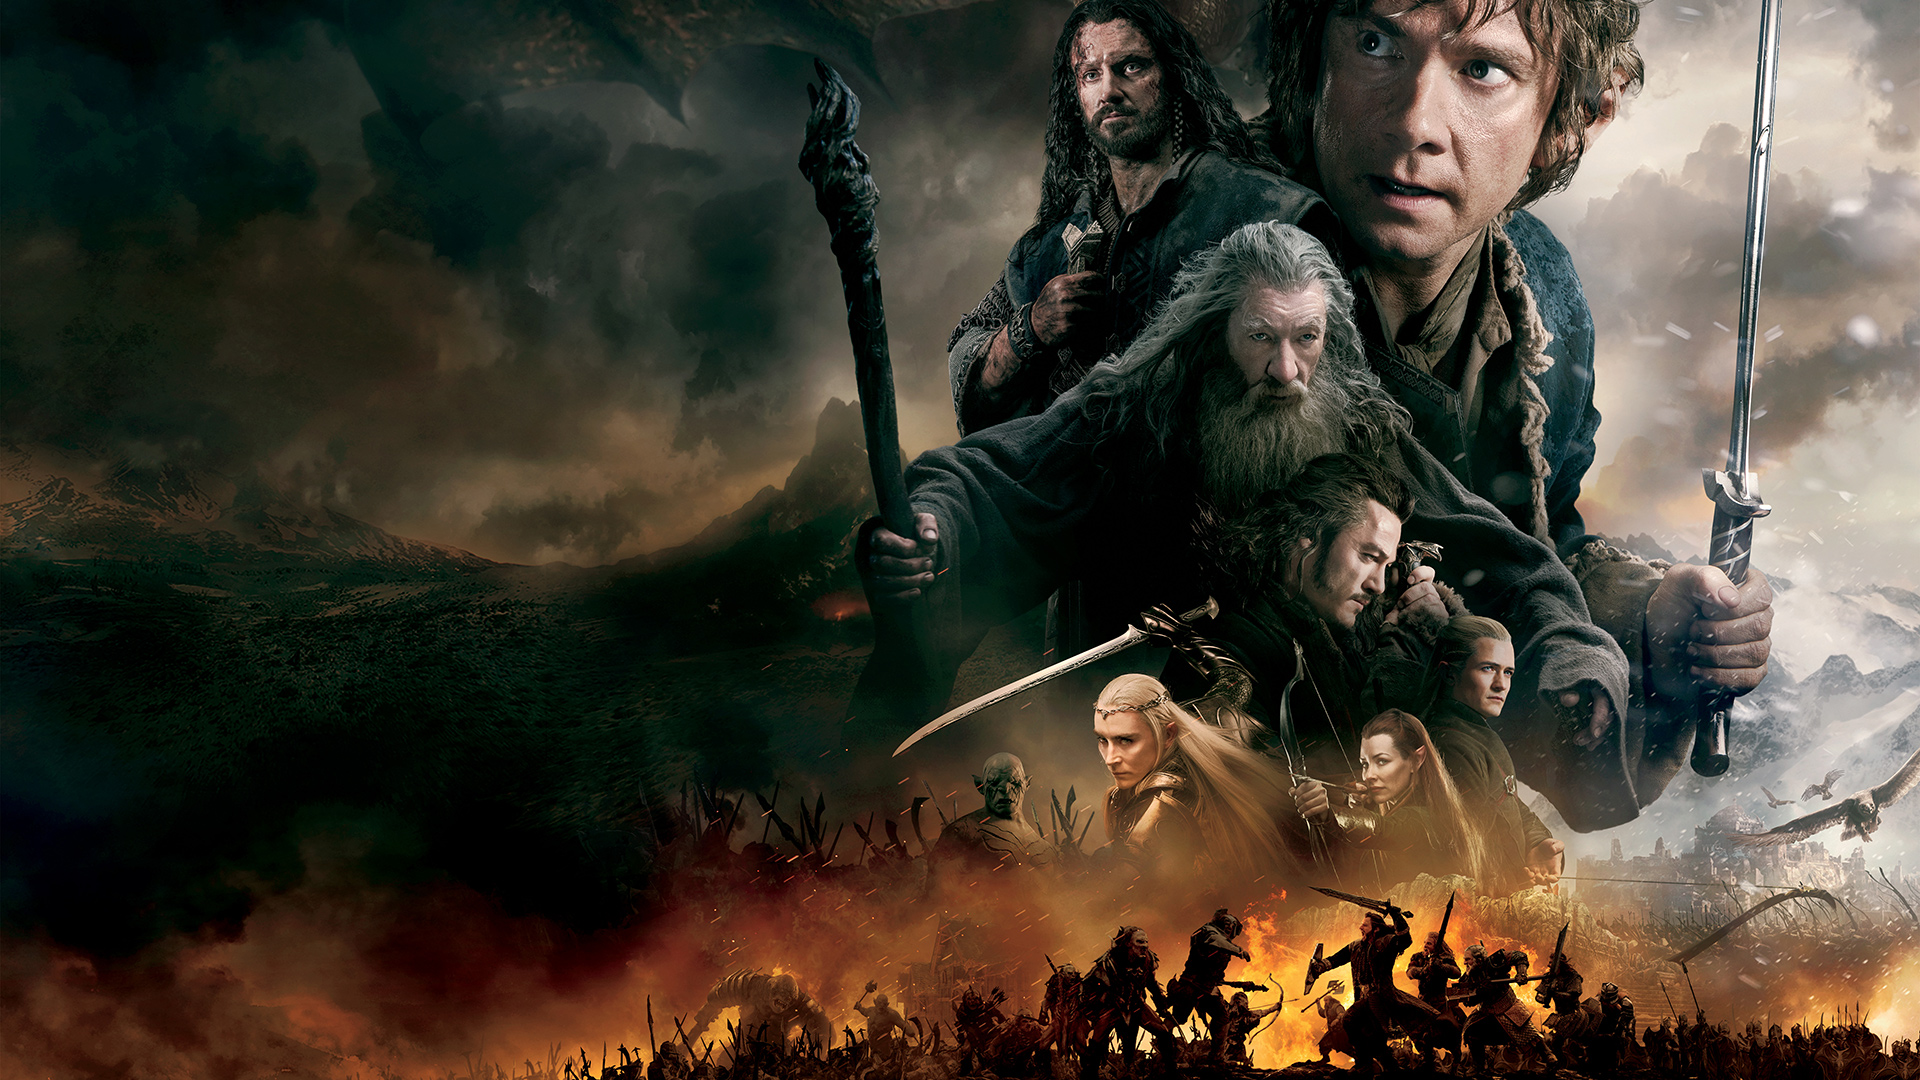 le hobbit - Le Hobbit : La Bataille des Cinq Armées - libéré, délivré the hobbit the battle of the five armies 546b1aa4f36e0